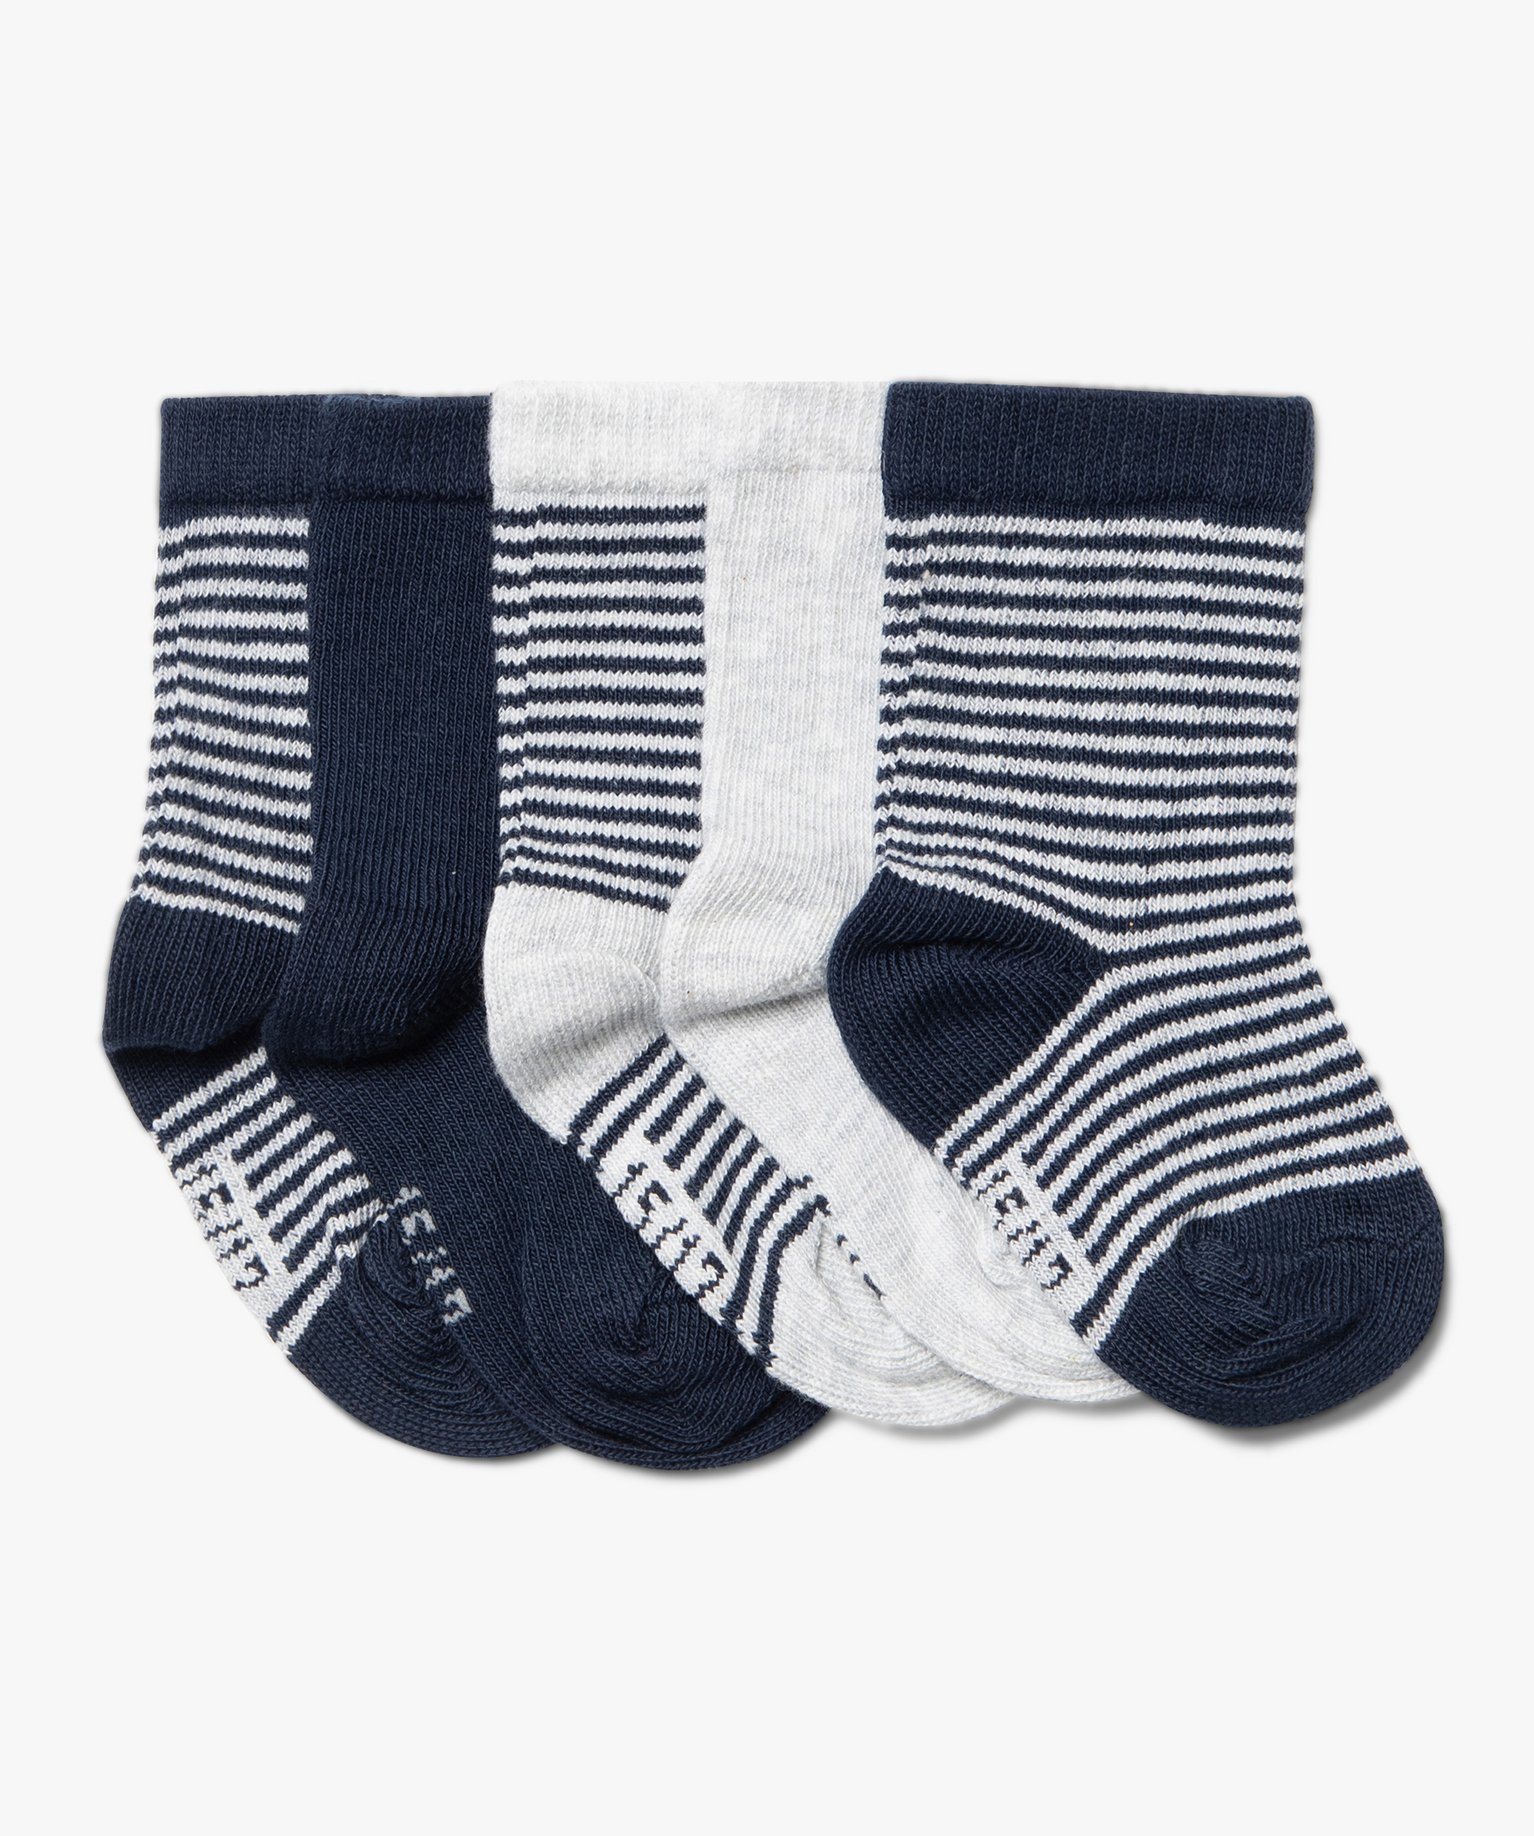 Chaussettes à rayures bébé (lot de 5) - GEMO